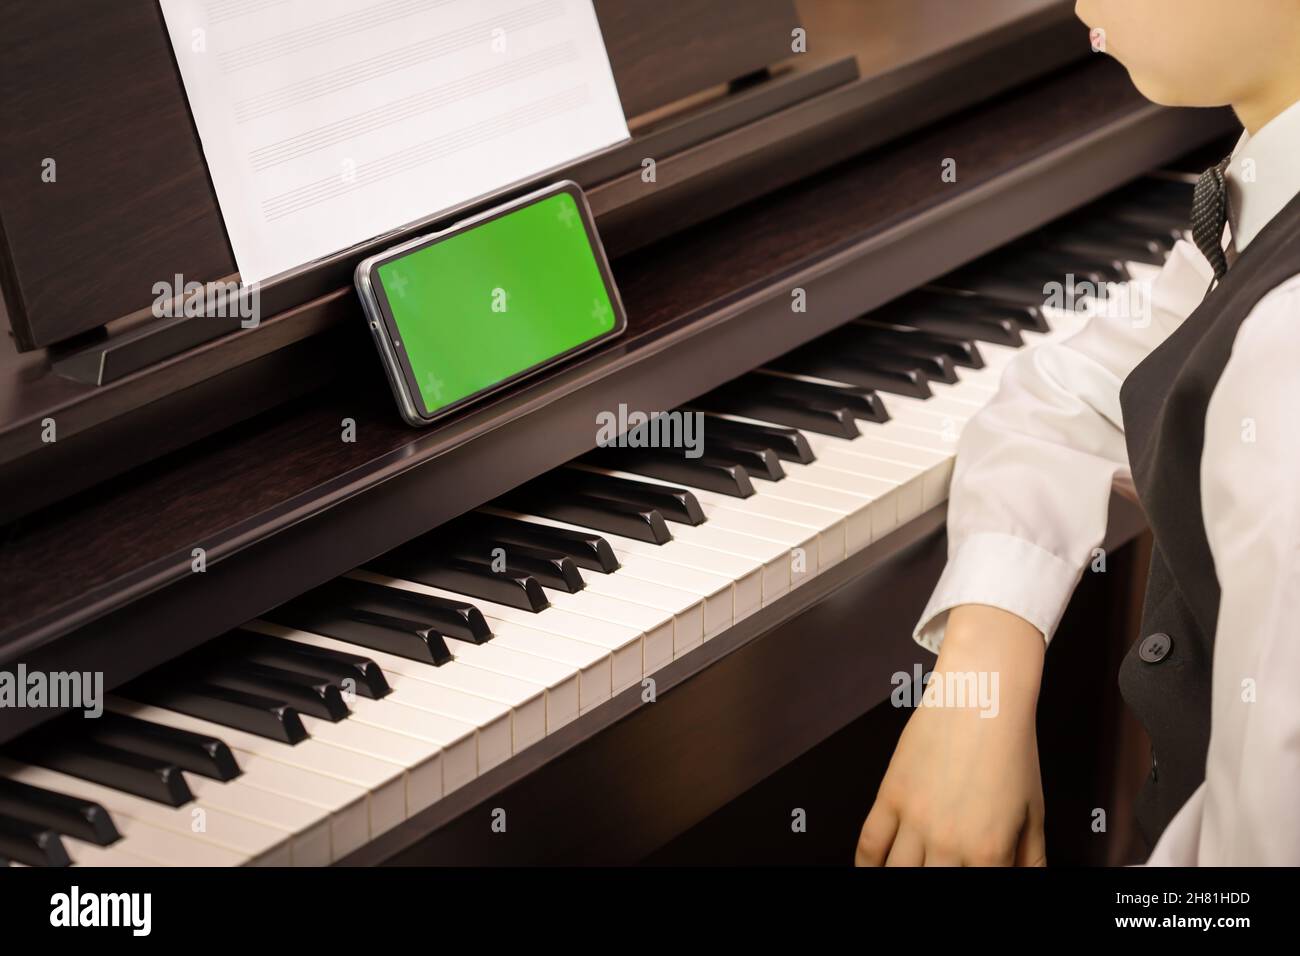 Un garçon s'assoit à un piano électronique et regarde dans un smartphone  avec écran vert.Maquette pour applications musicales mobiles.Cours de piano  en ligne.Éducation musicale en ligne Photo Stock - Alamy